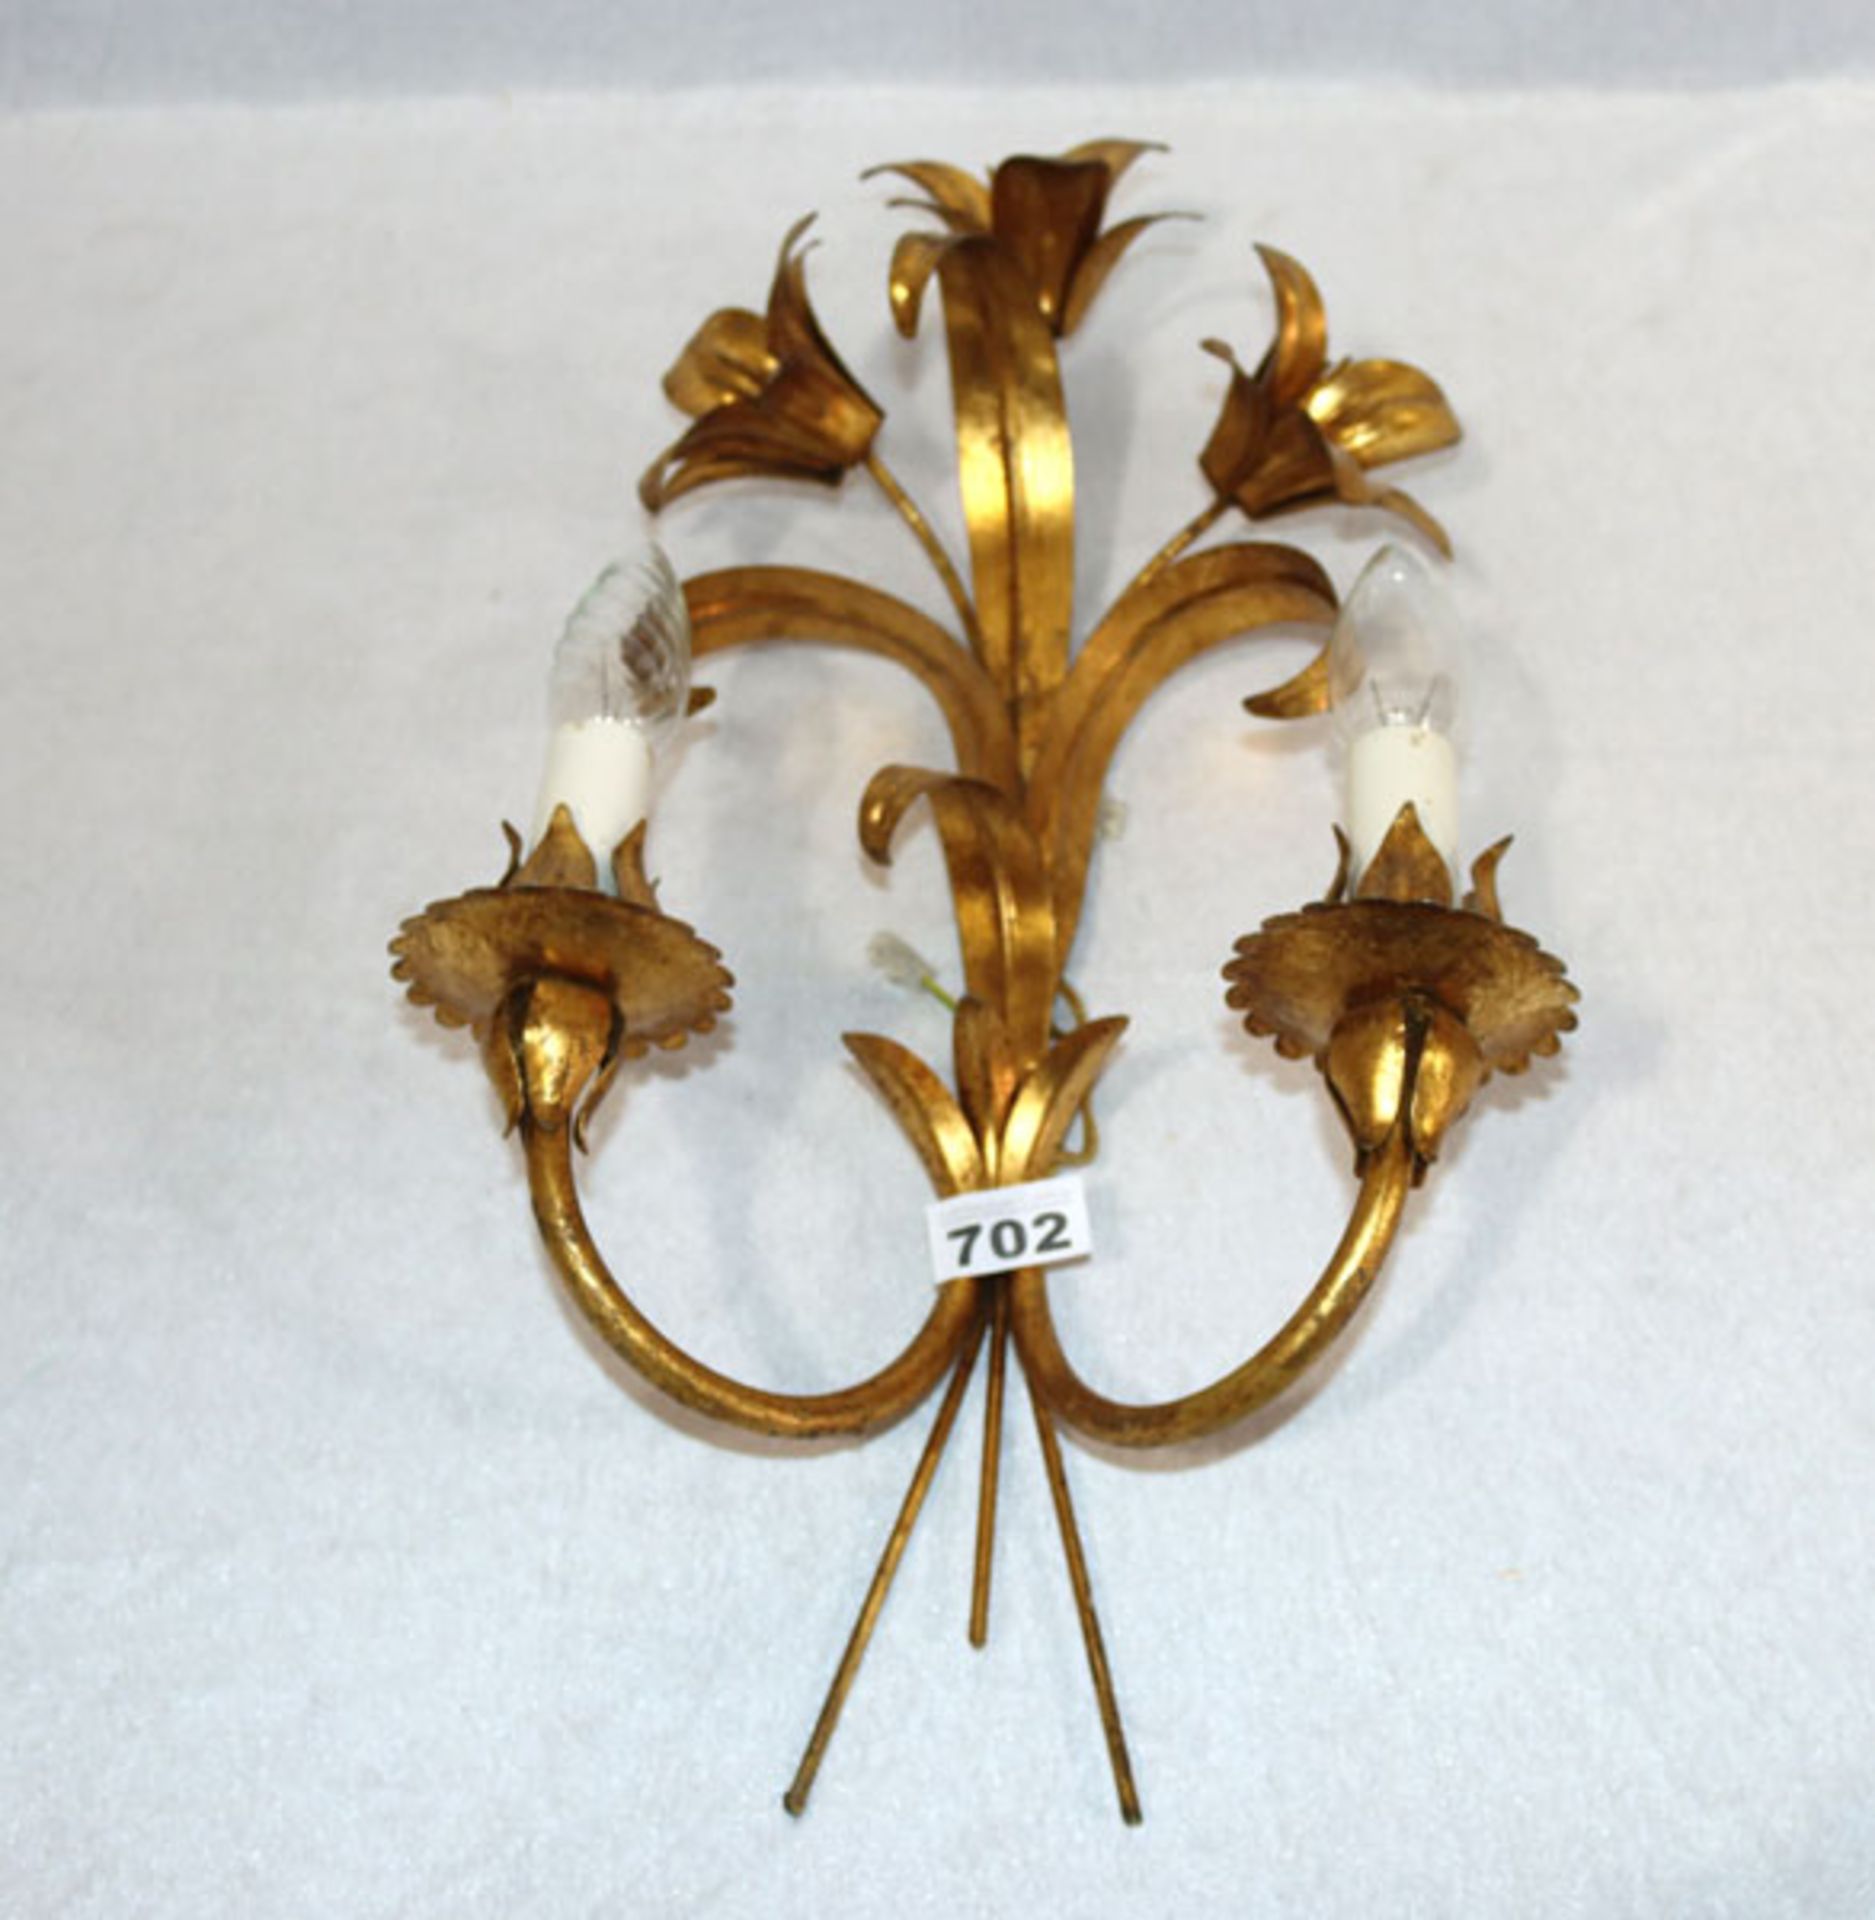 Metall Wandlampe, 2-armig mit Blütendekor, goldfarben, H 50 cm, B 27 cm, T 15 cm, Gebrauchsspuren,